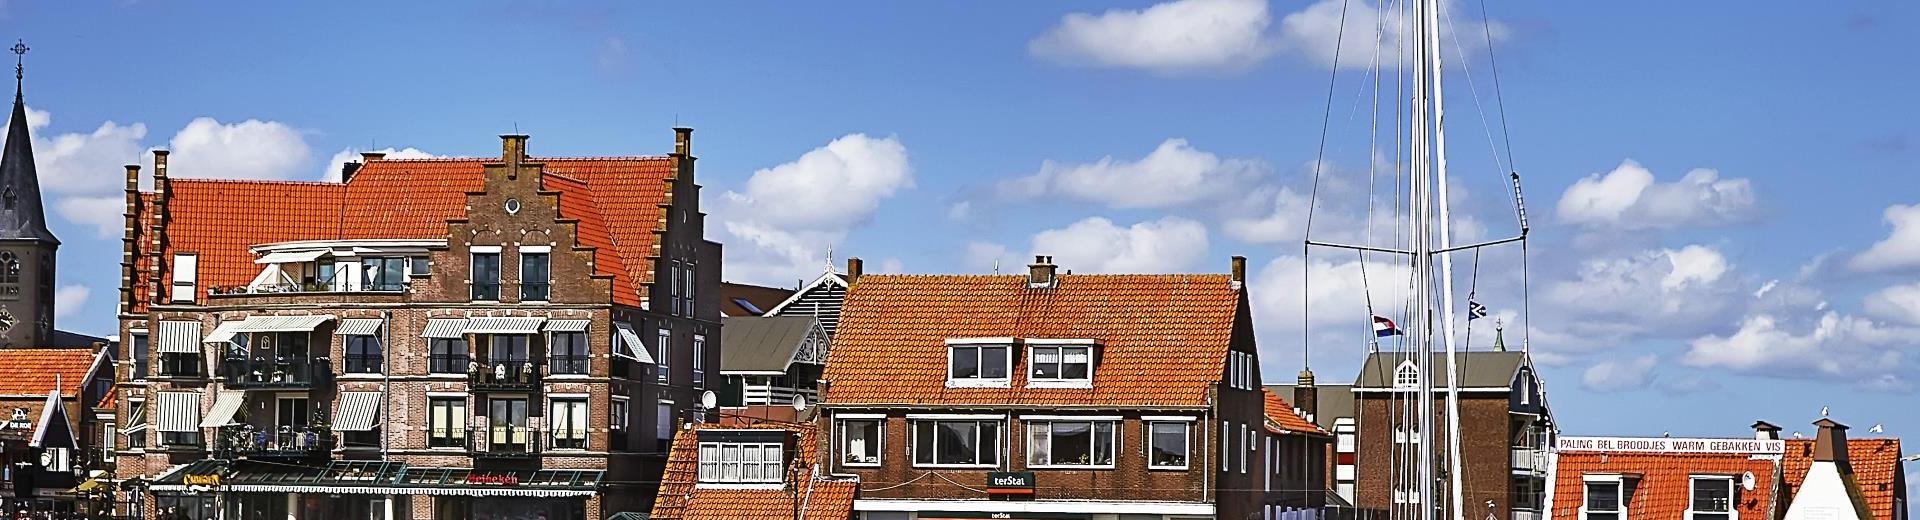 Vakantiehuizen en appartementen in Bakkeveen - EuroRelais